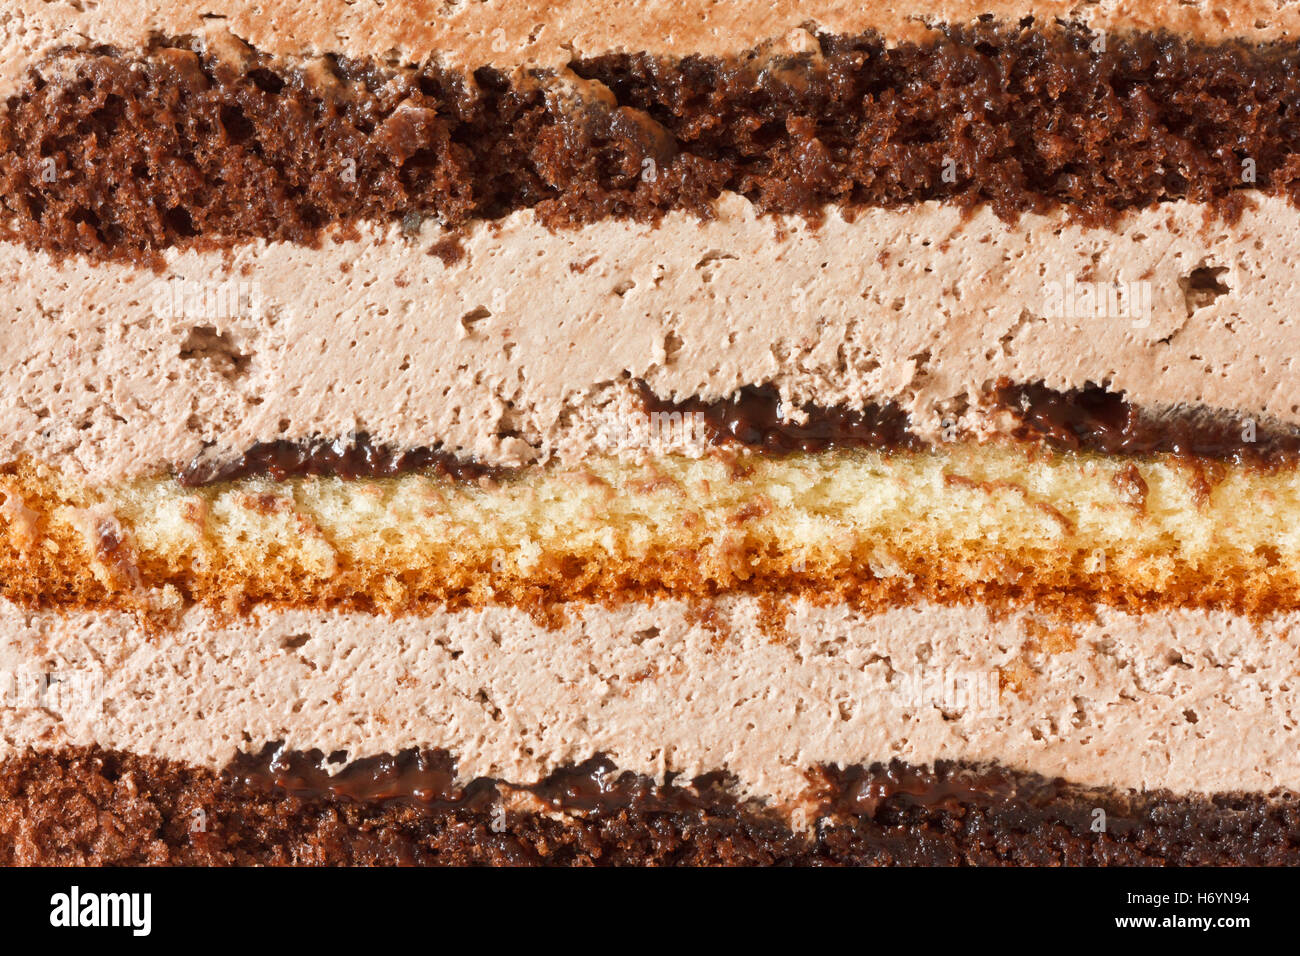 Layered torta al cioccolato dettaglio come sfondo Foto Stock